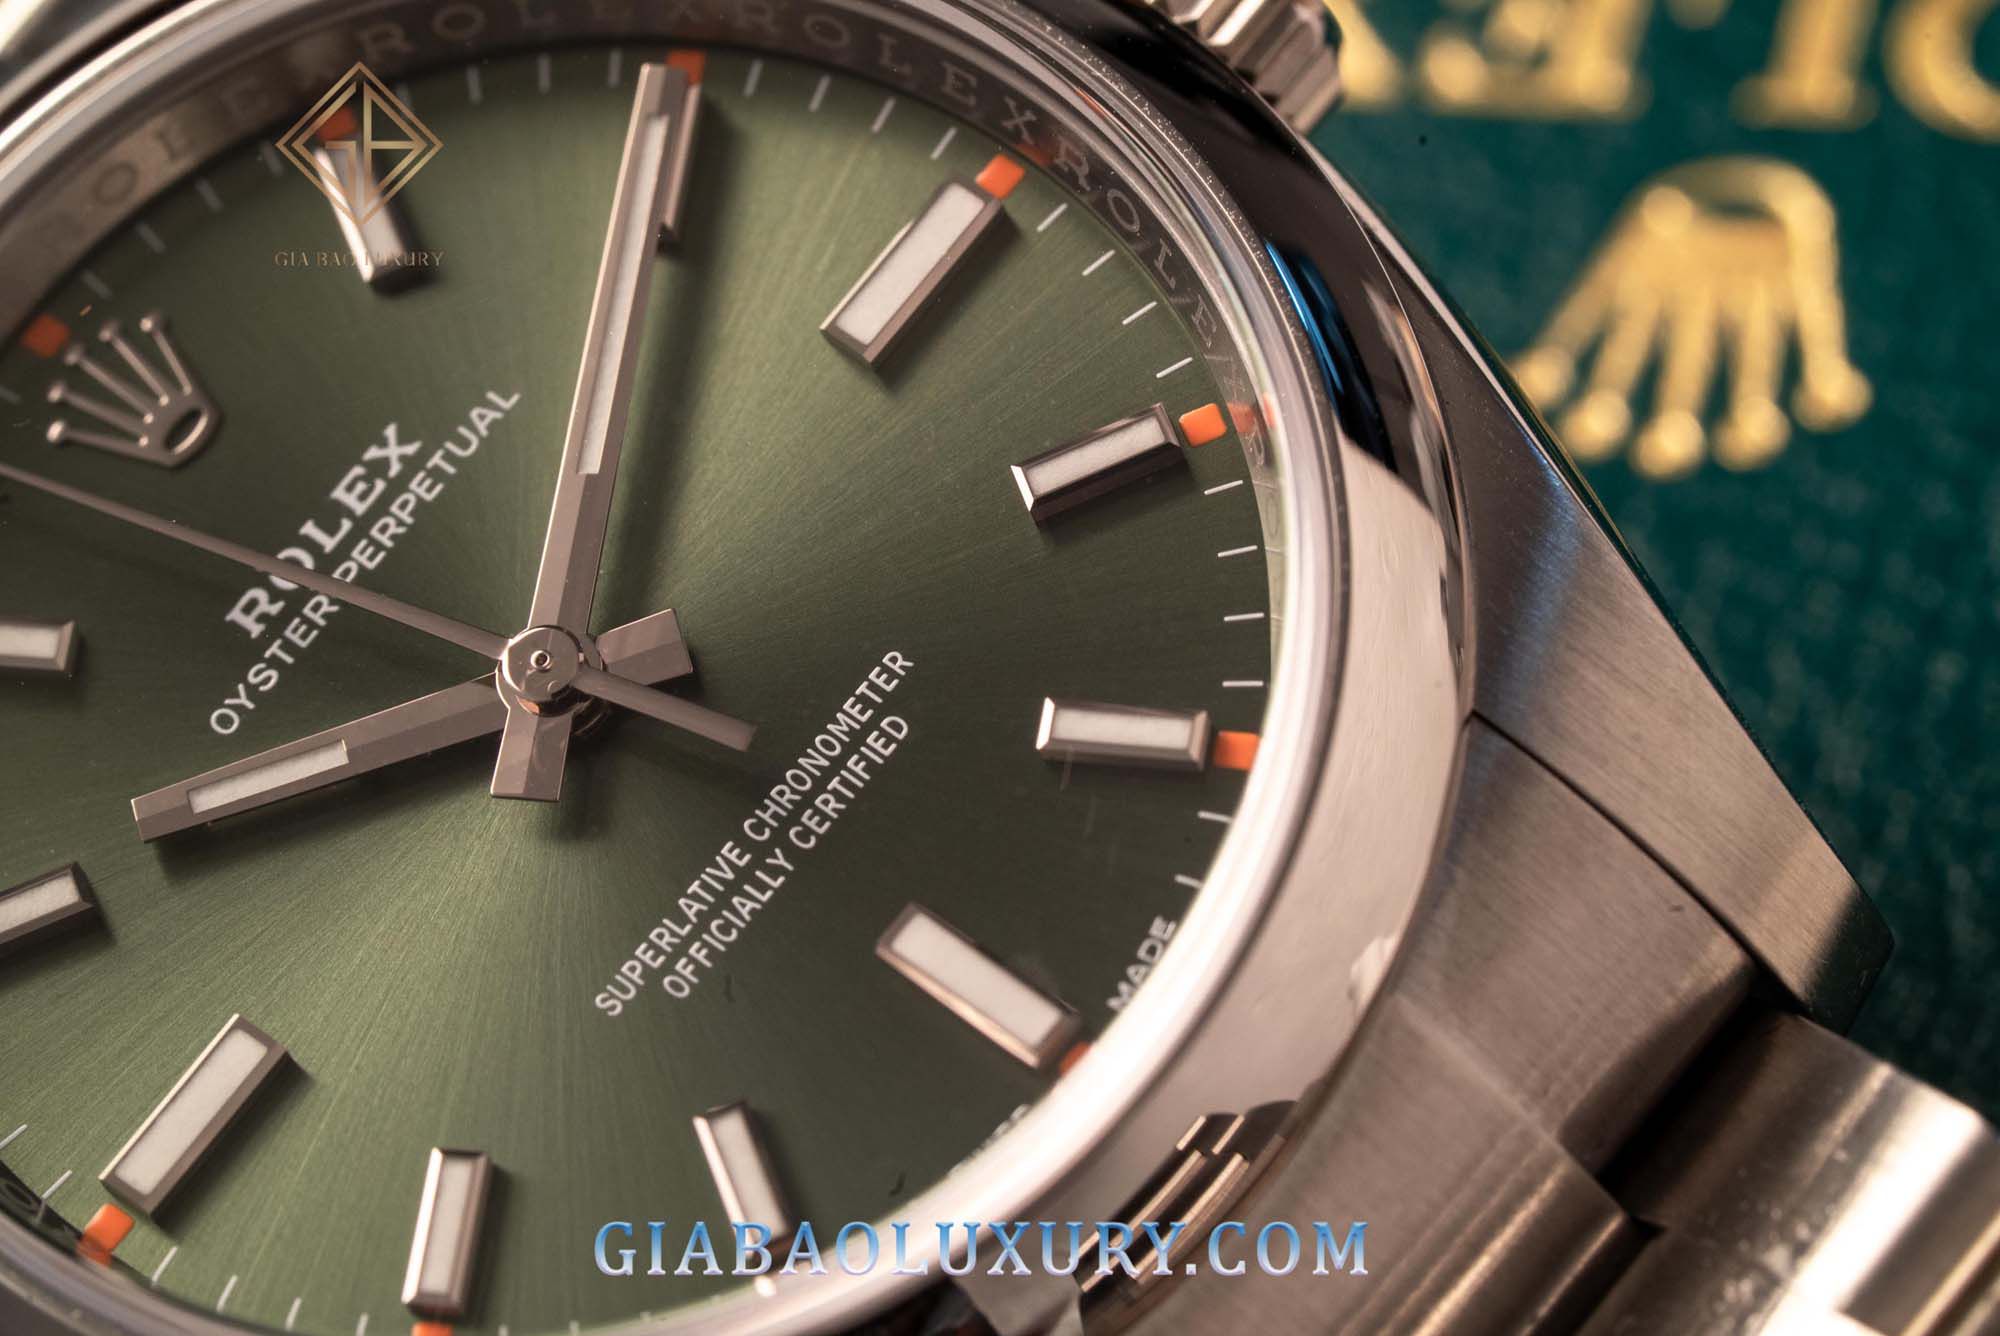 Phiên bản đồng hồ Oyster Perpetual 114200 34mm xanh lá mê hoặc thị giác